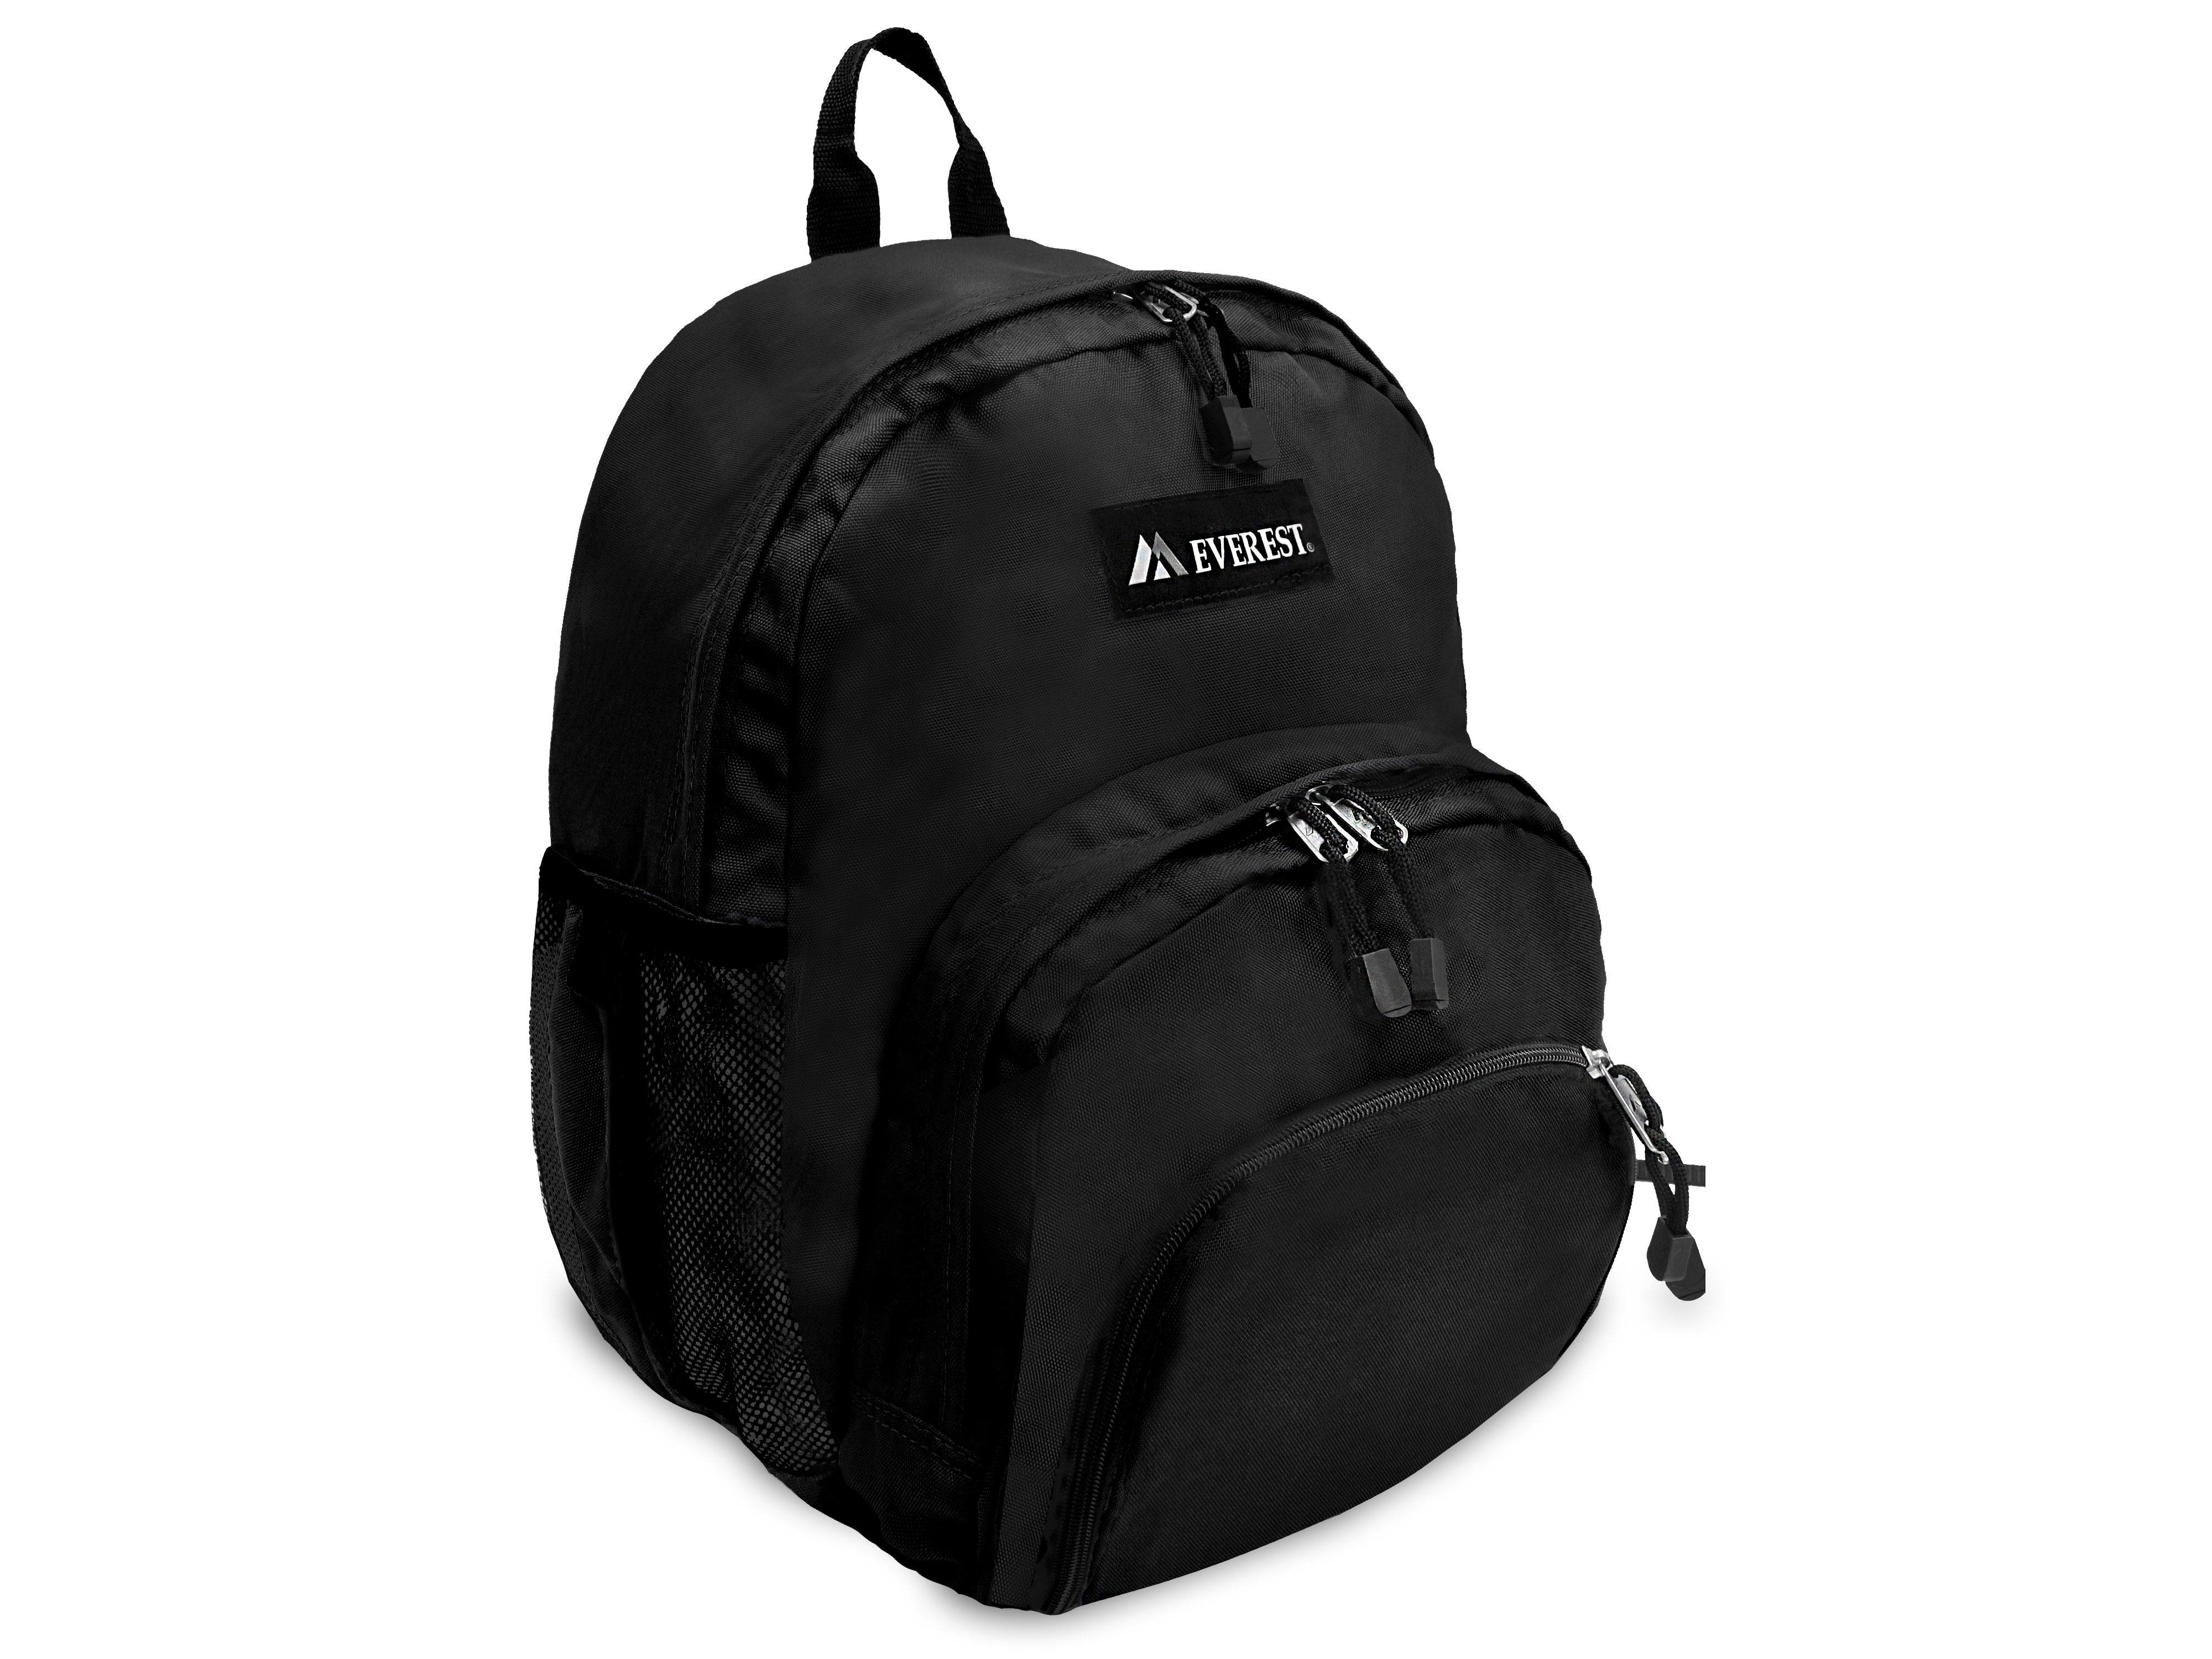 Everest Backpack, Black - image 2 of 4